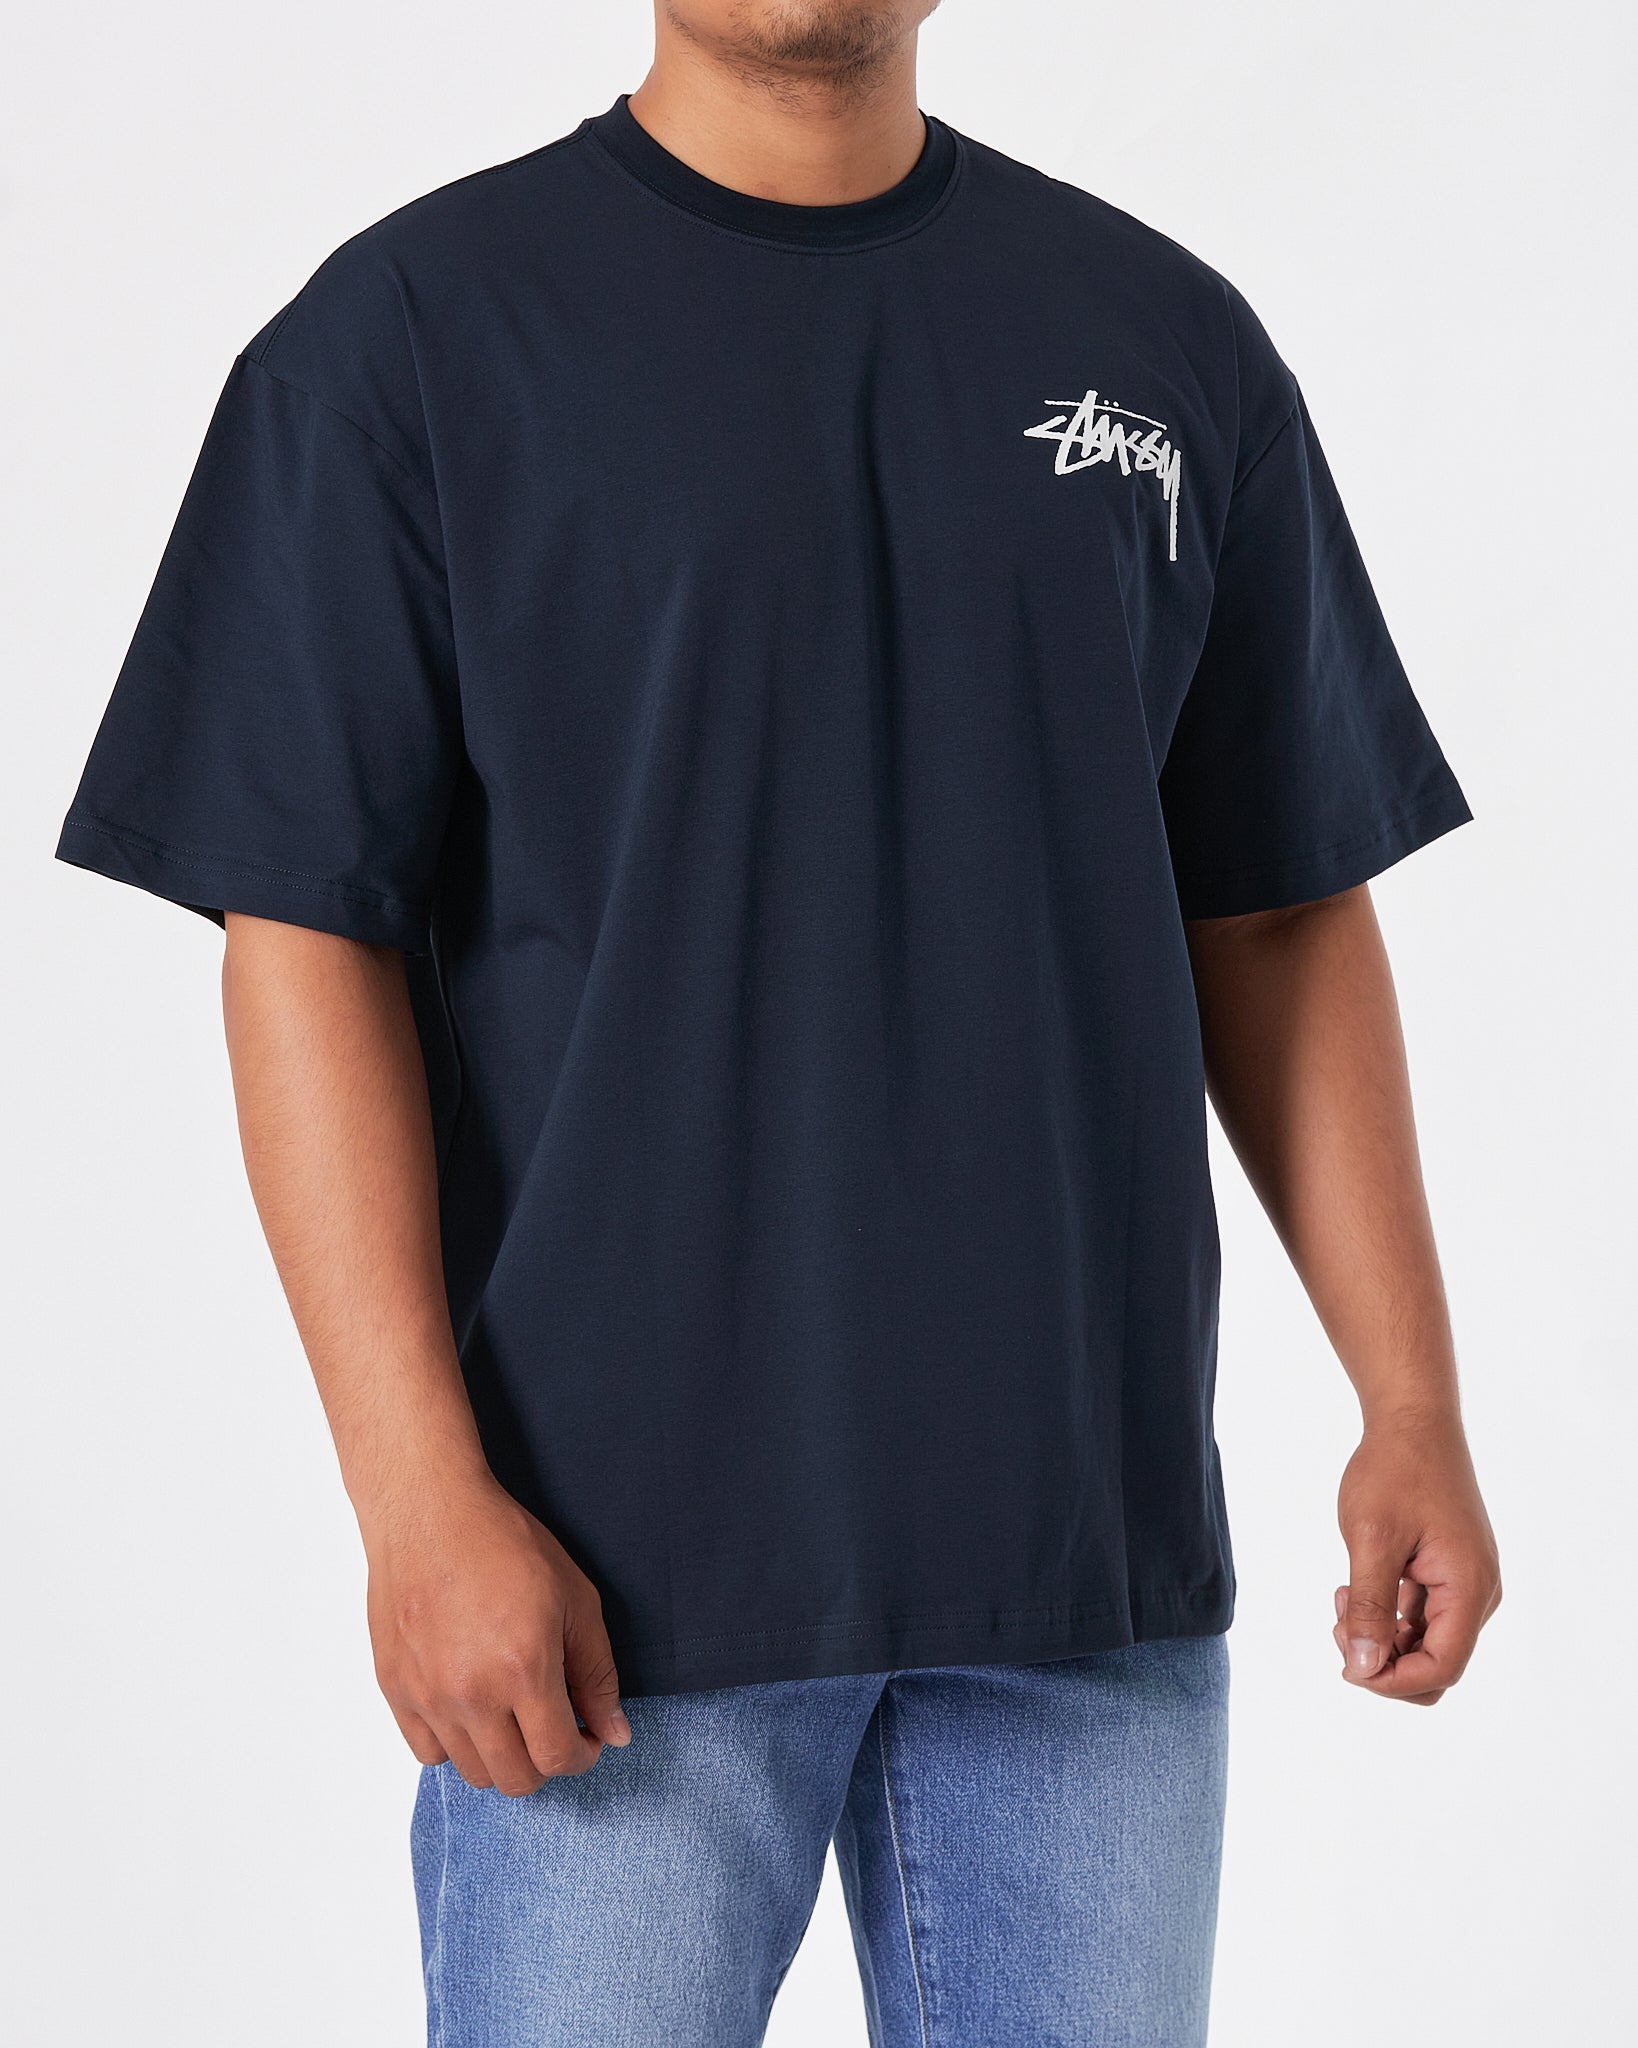 STU Deck 2 Men Blue T-Shirt 21.90